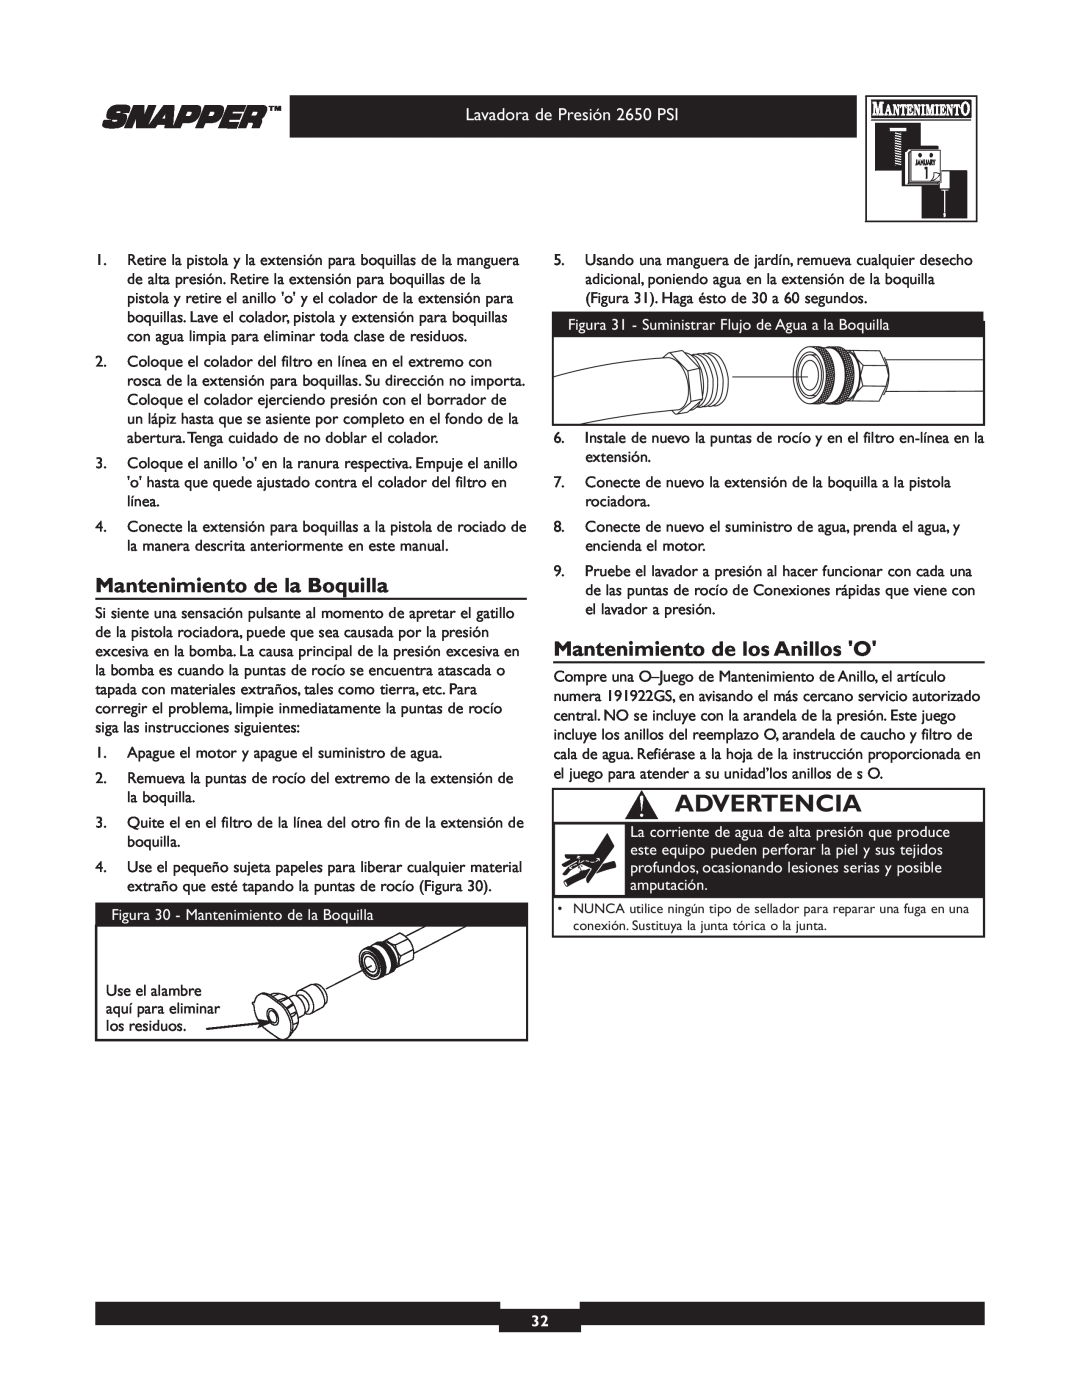 Snapper 020230 user manual Mantenimiento de la Boquilla, Mantenimiento de los Anillos O, Advertencia 